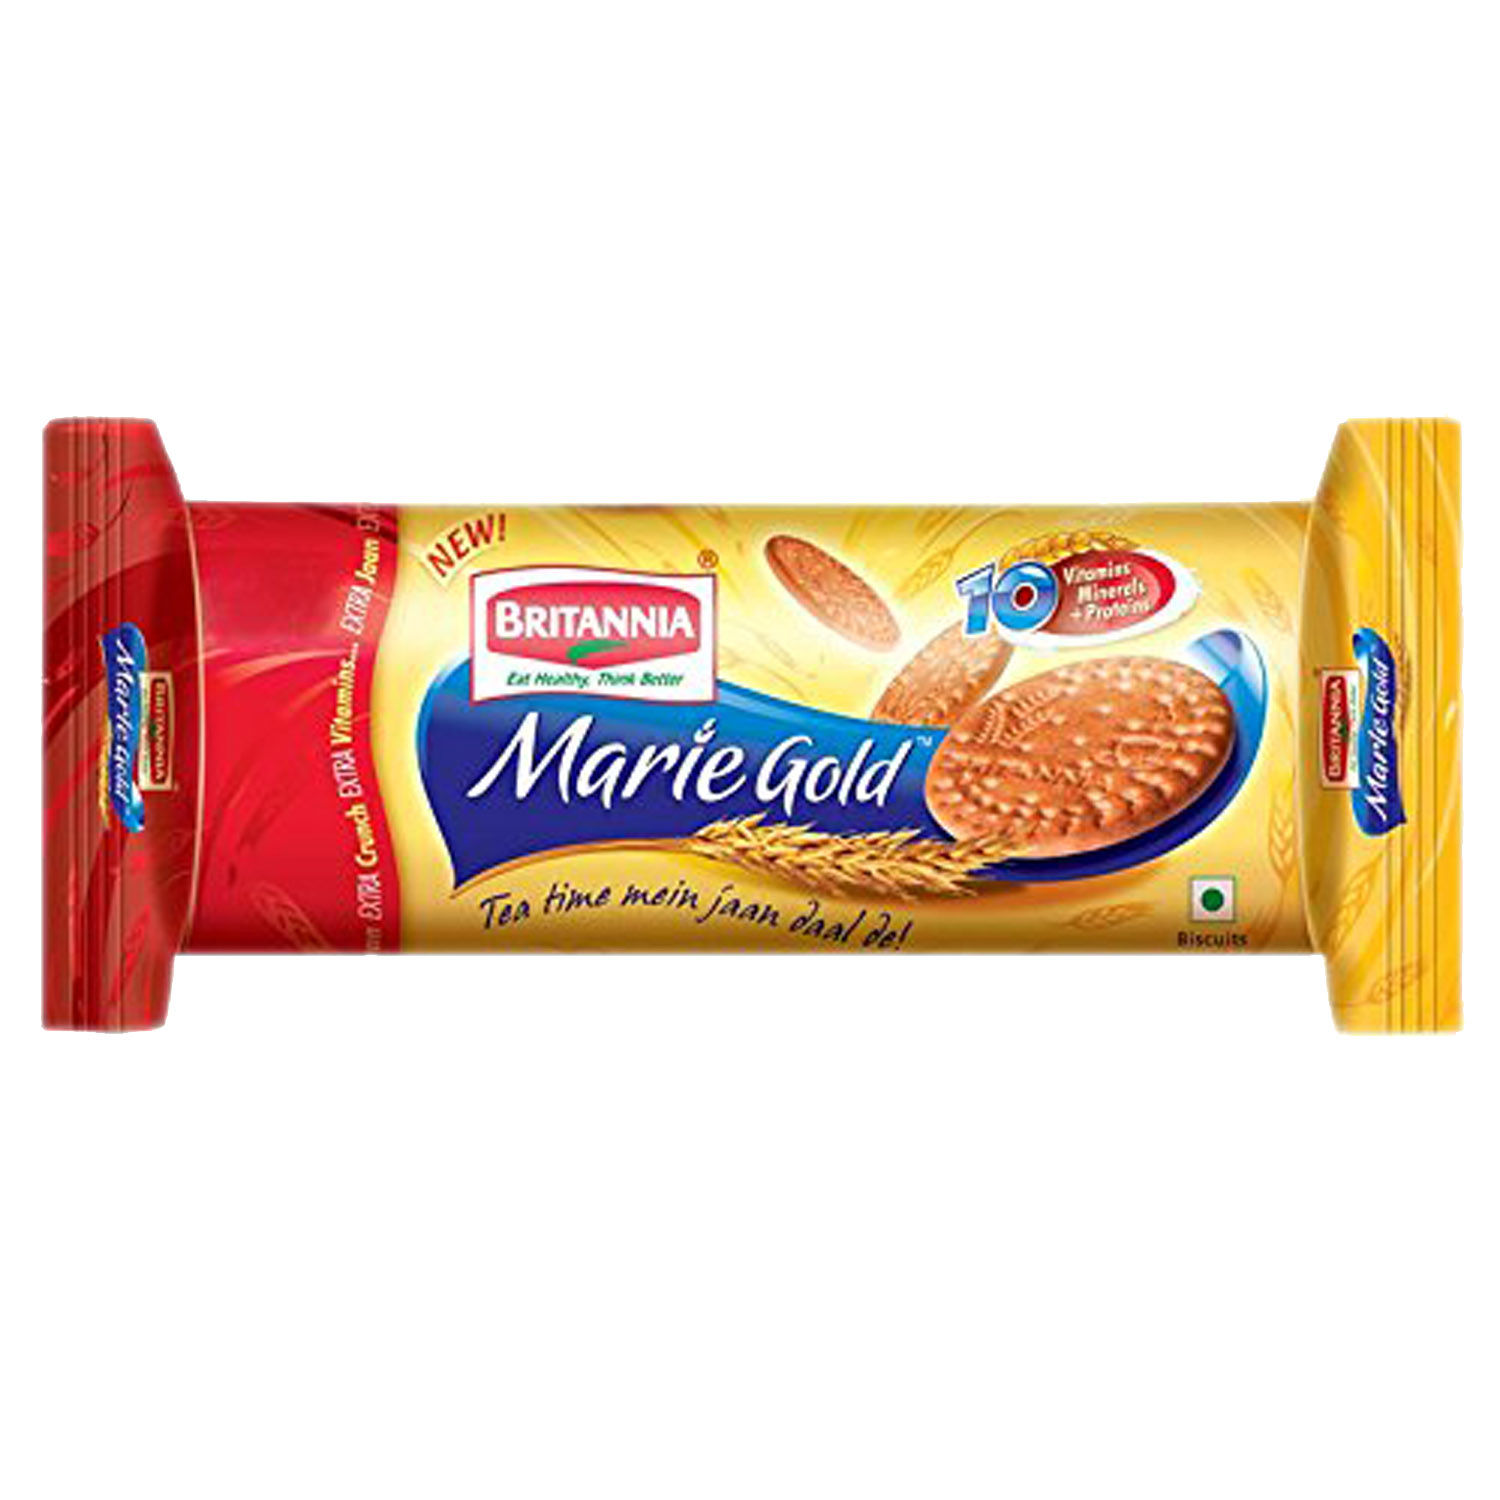 Britannia Marie Gold Biscuits, 200 gm, Pack of 1 